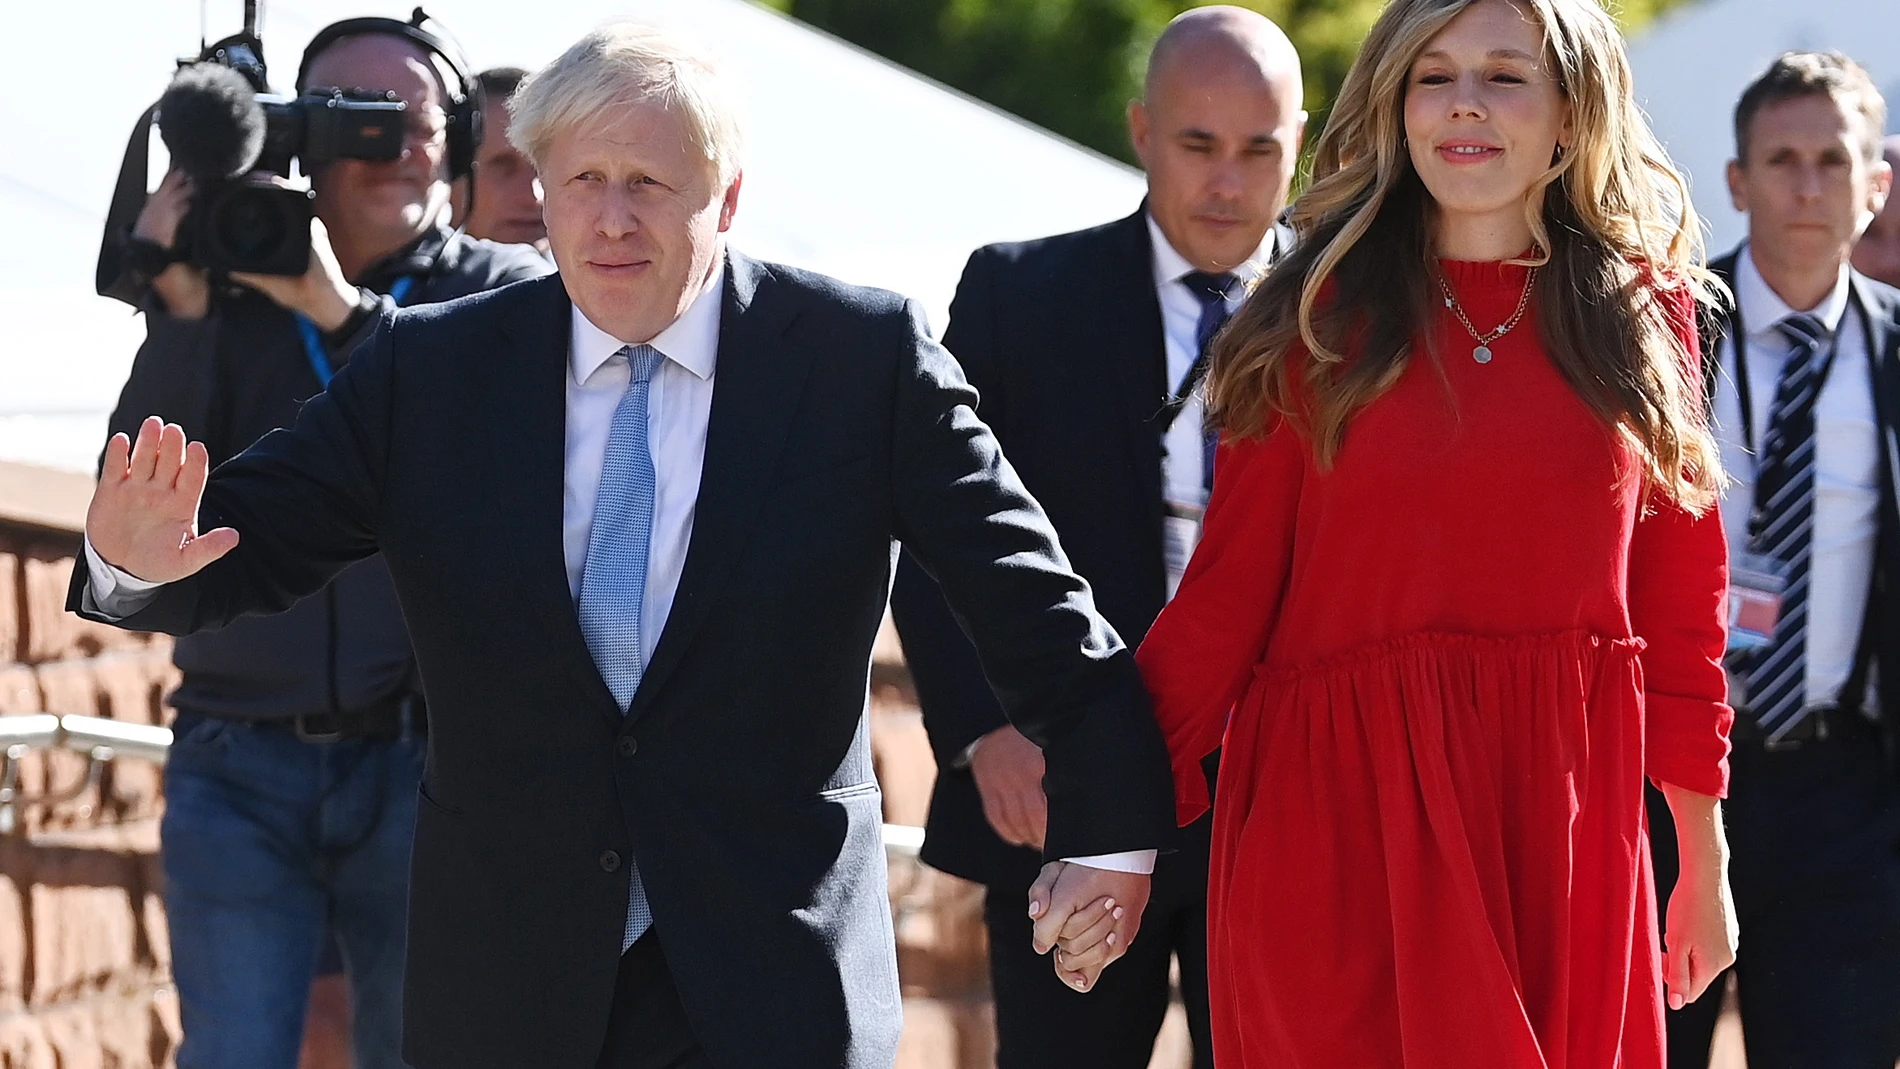 Boris Johnson y su esposa Carrie se convierten en padres de una niña, su segundo hijo en común